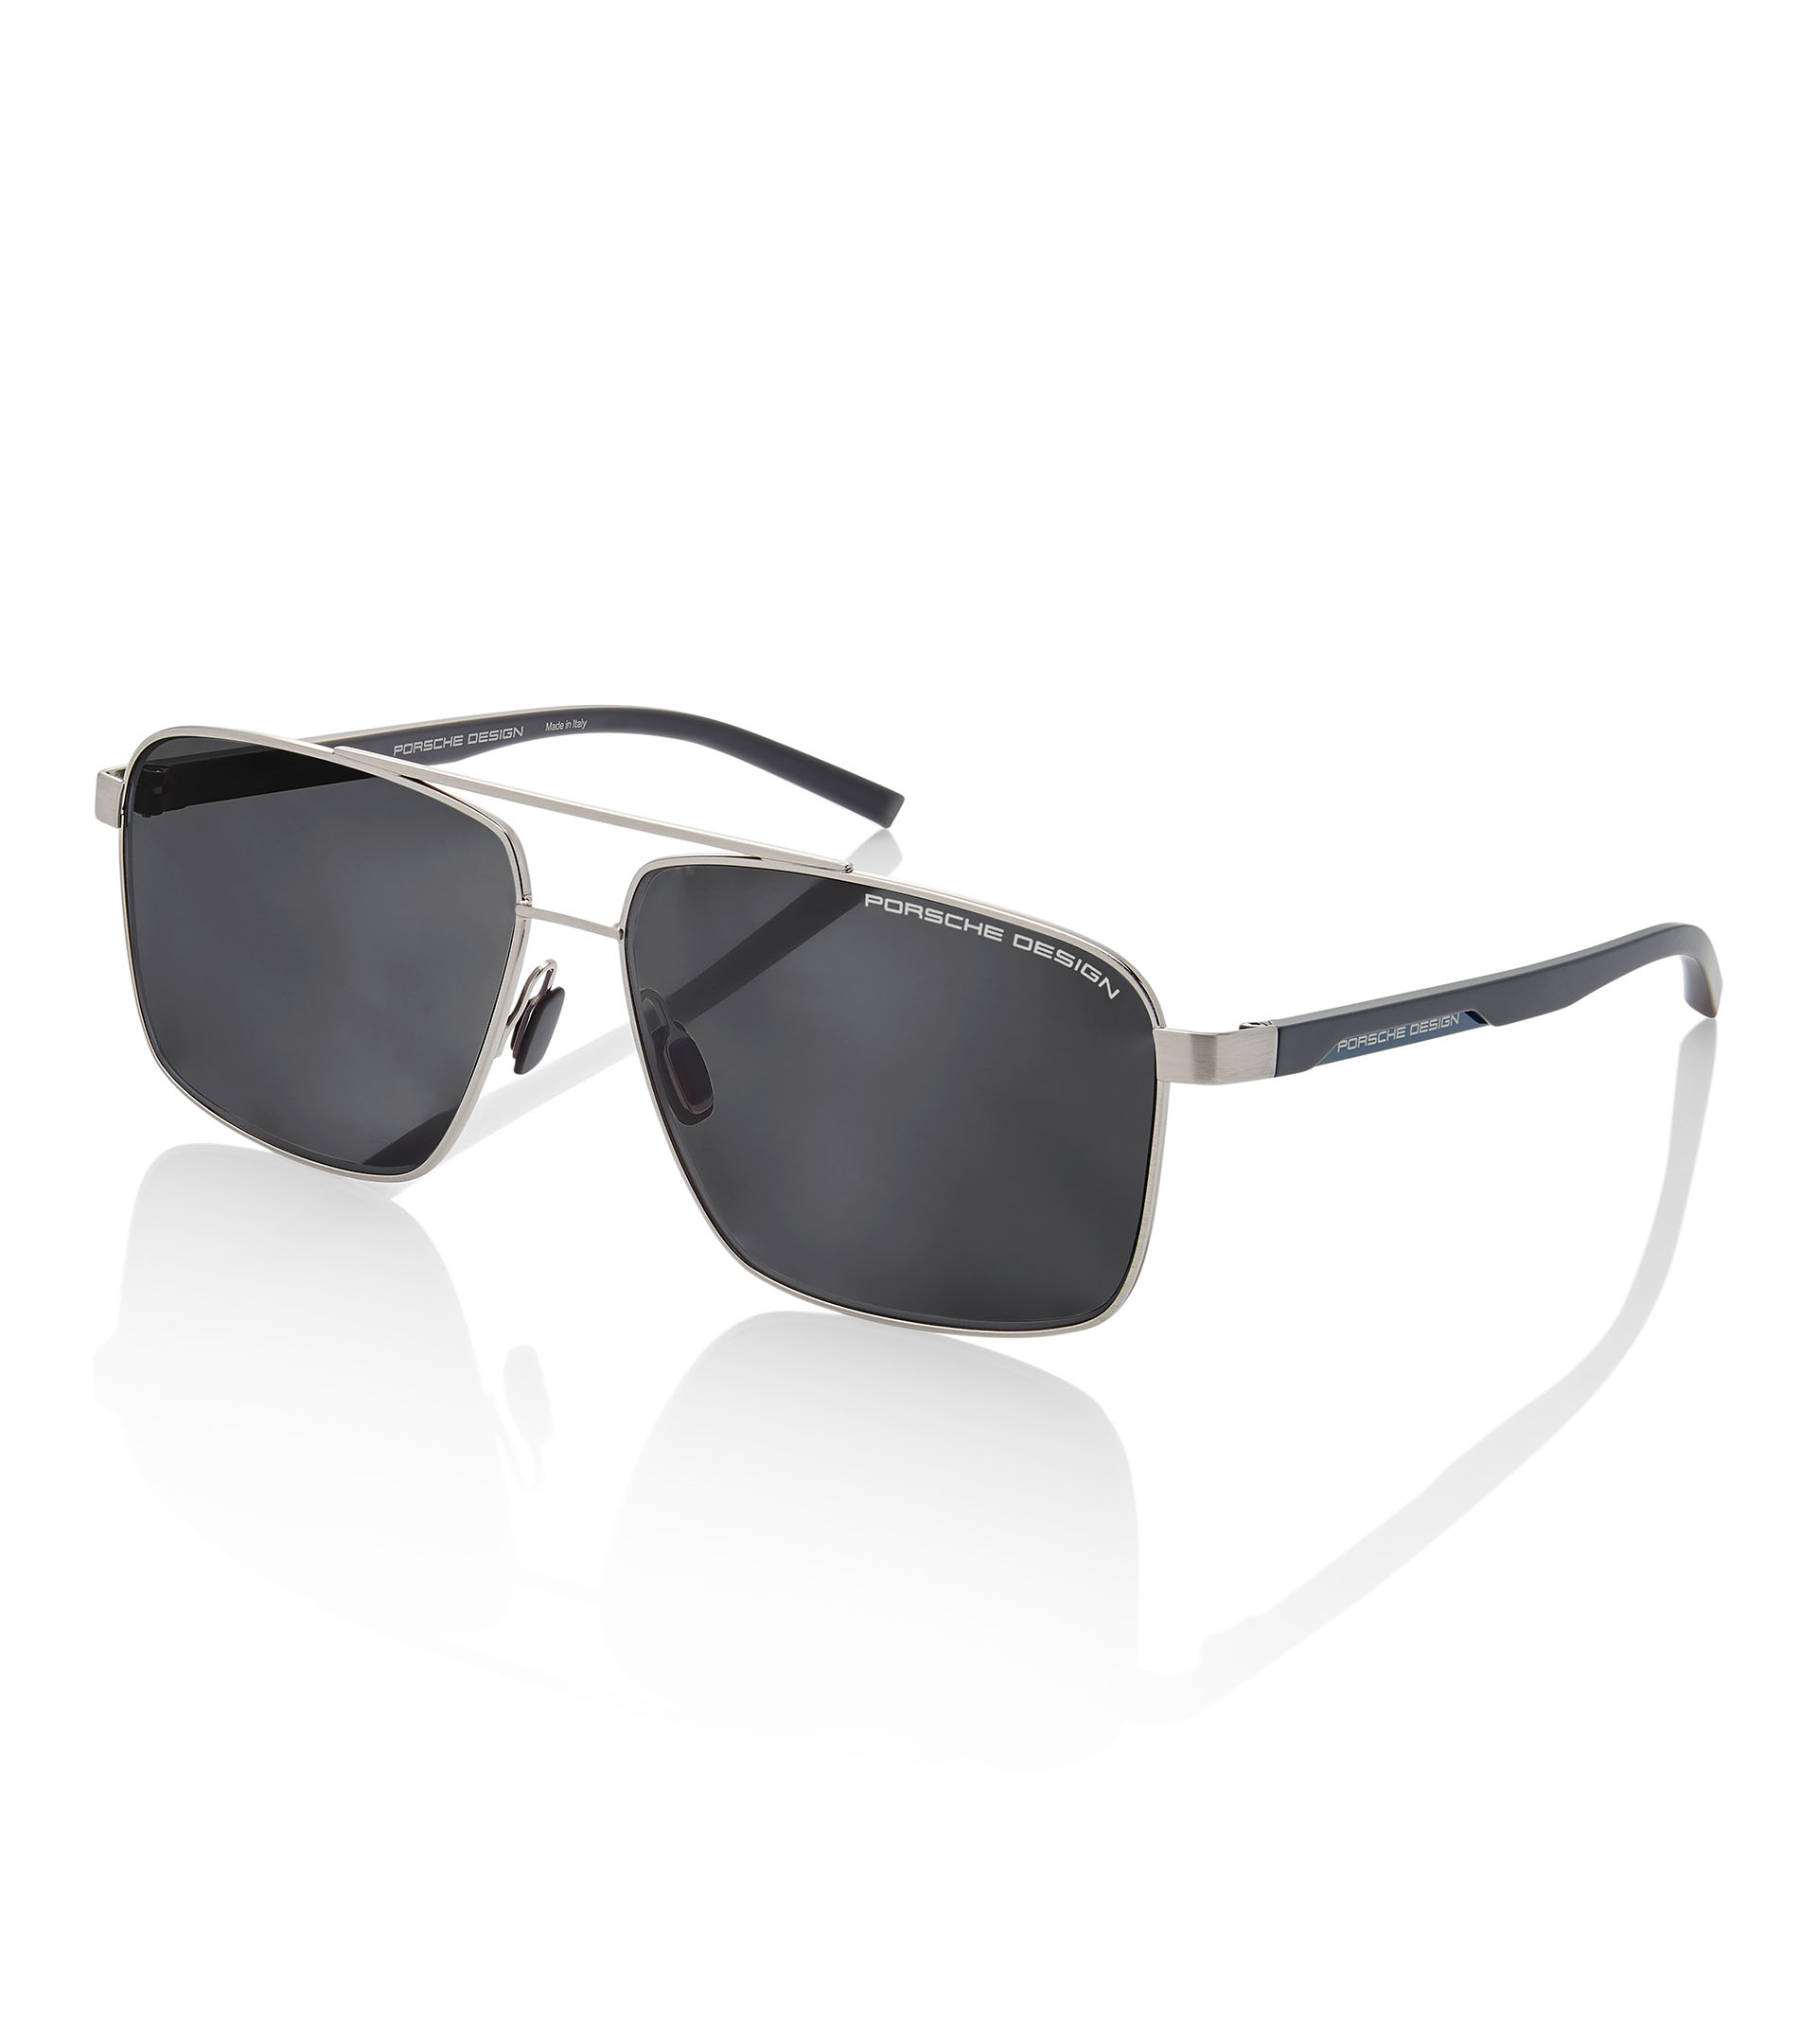 Sunglasses P´8944 - Square Sunglasses for Men | Porsche Design 